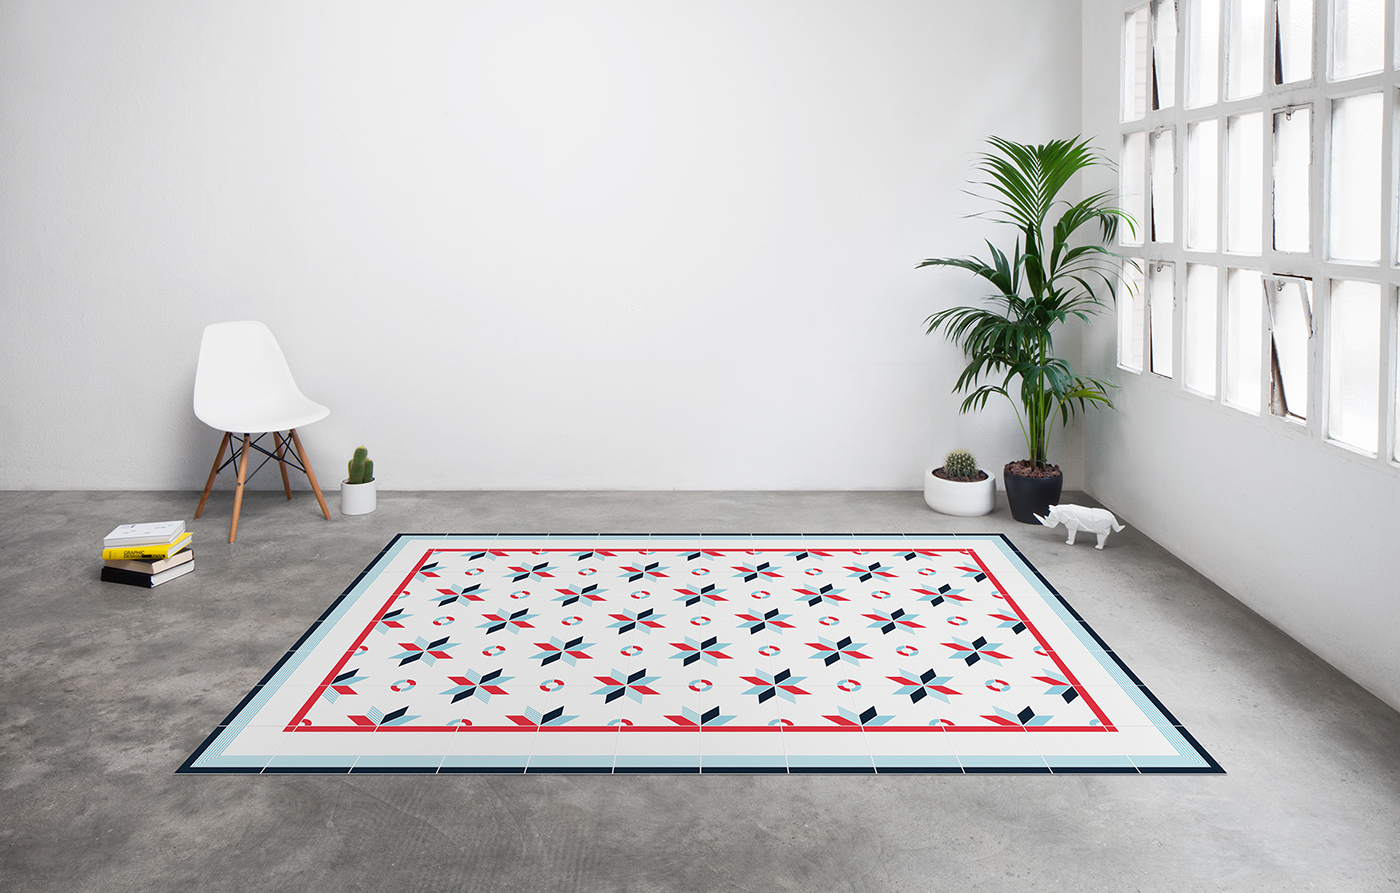 tiles carpet Tablecloth interiordesign design home decor